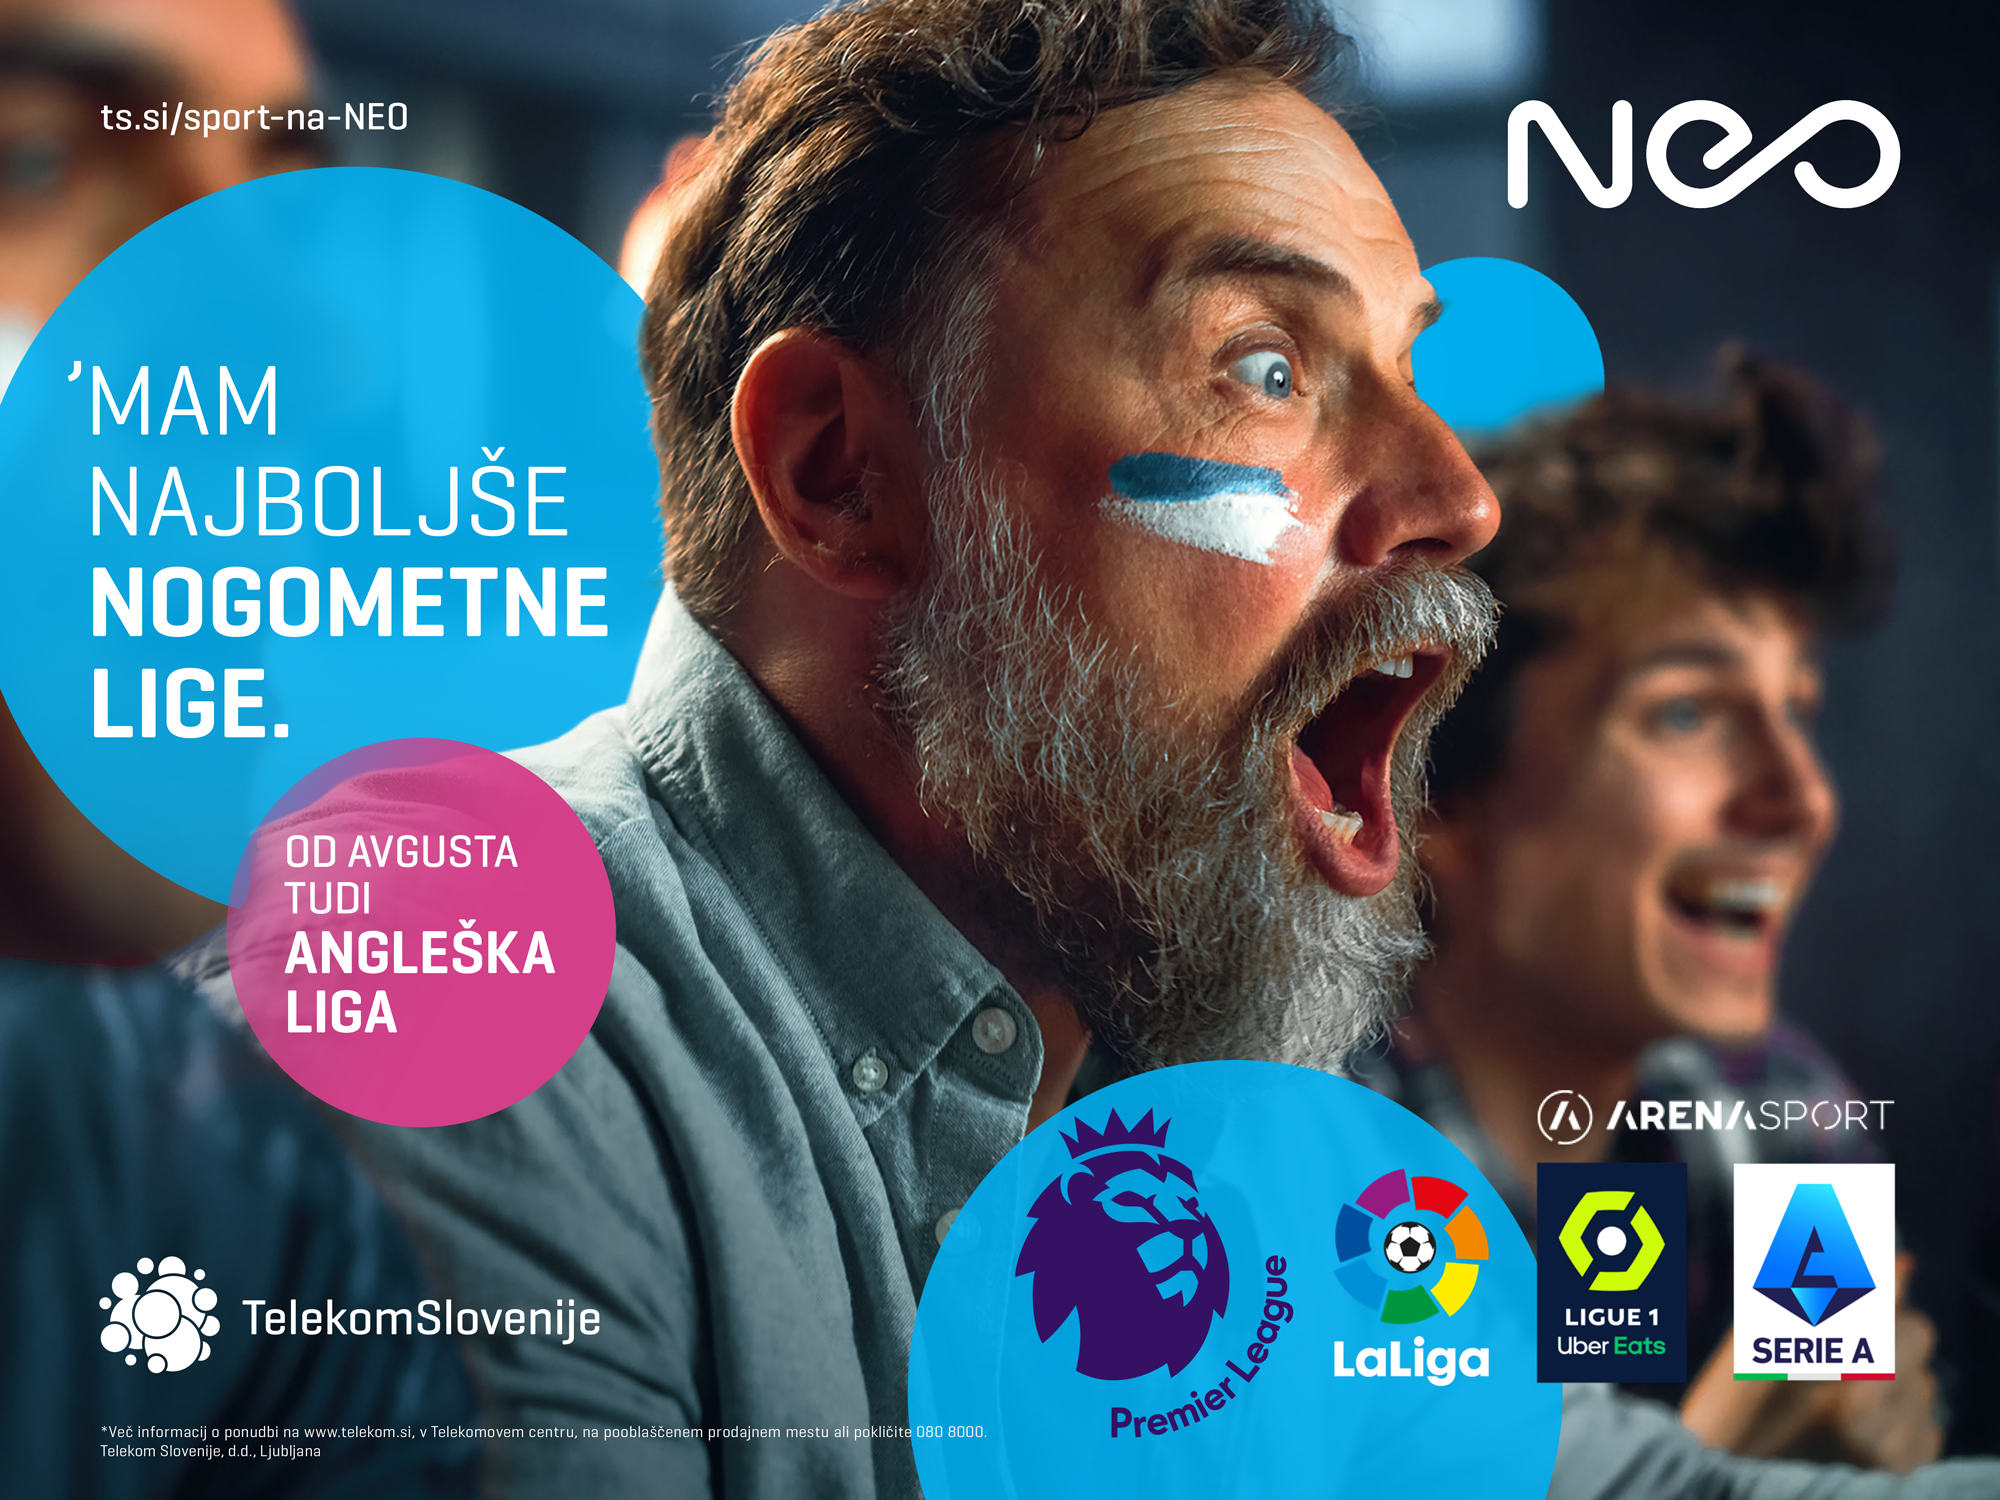 Telekom Slovenije ajoute Arena Sport 1 Premium à sa grille de programmation, qui diffuse la Premier League anglaise